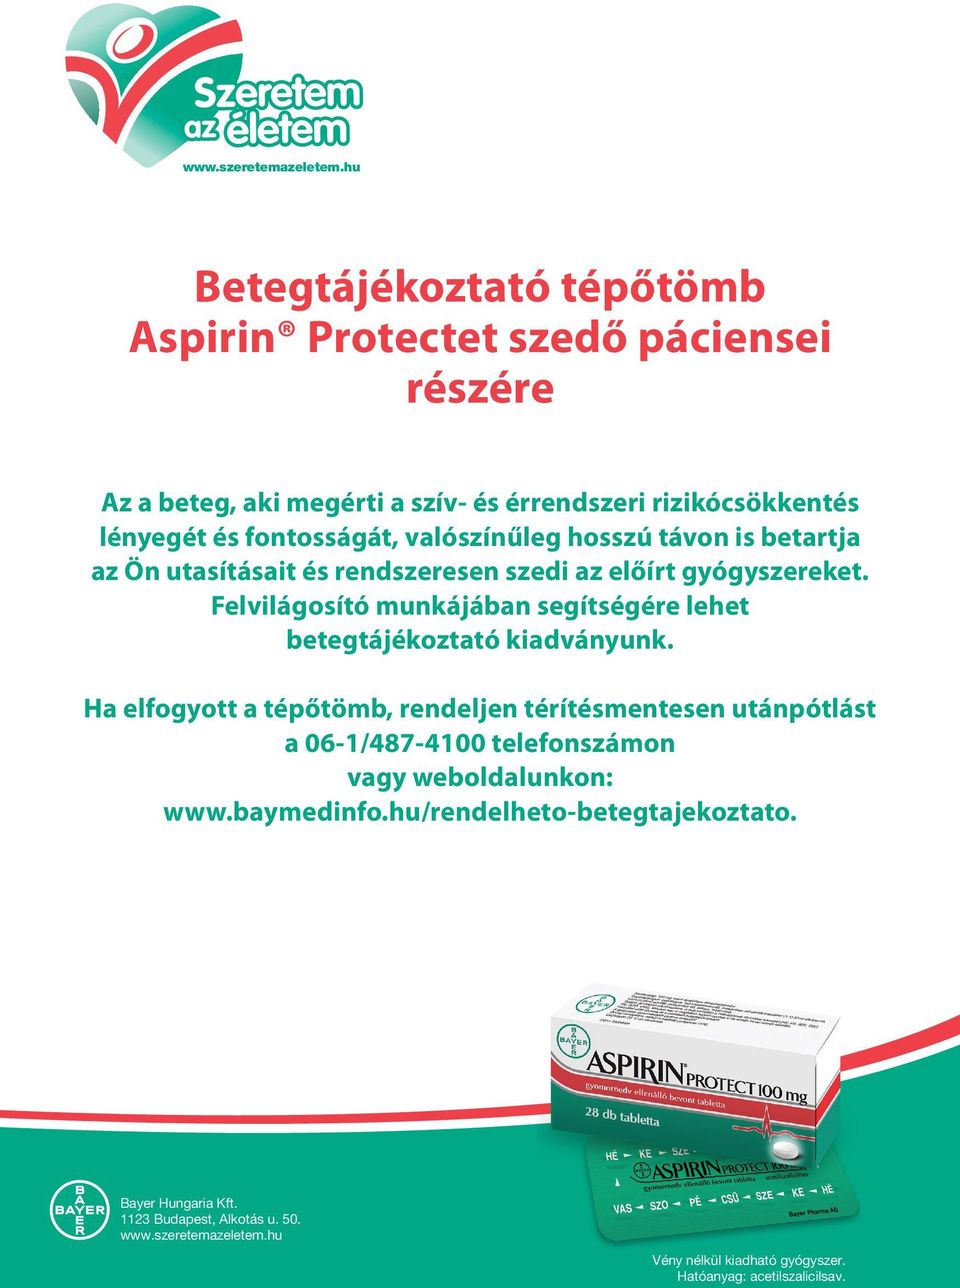 ASPIRIN PROTECT tabletta betegtájékoztató